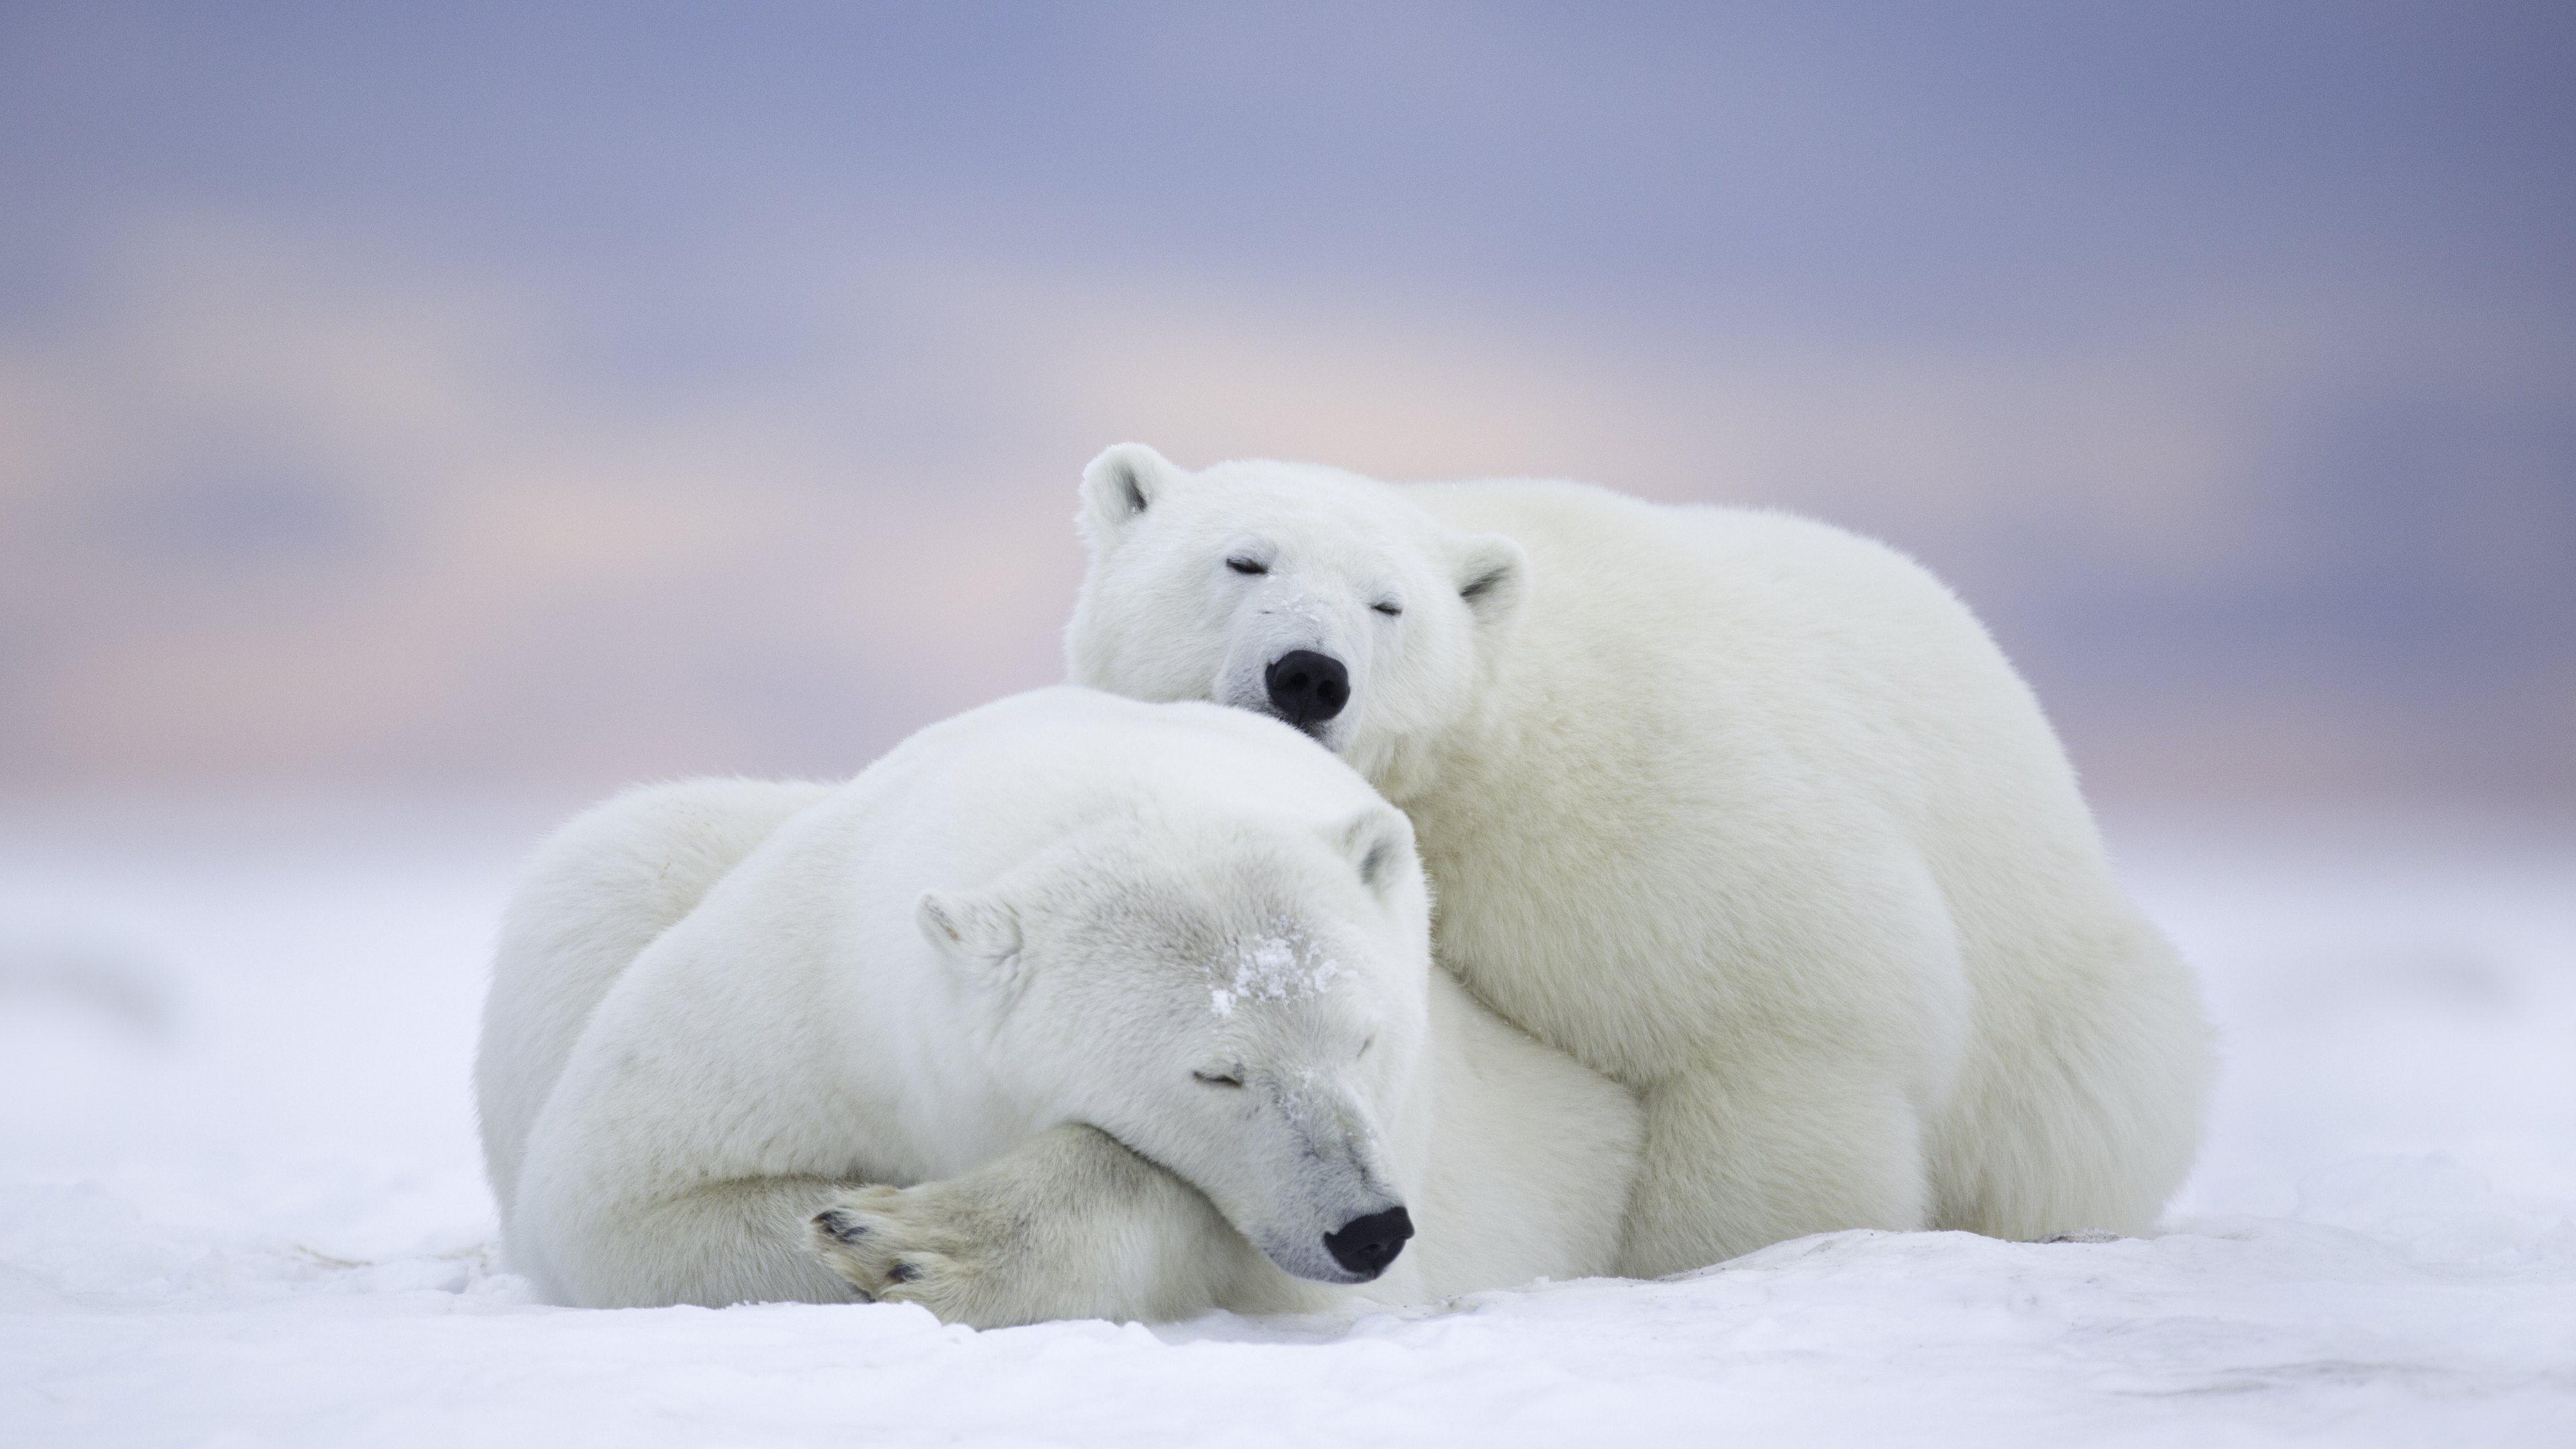 Cute Polar Bear Wallpapers